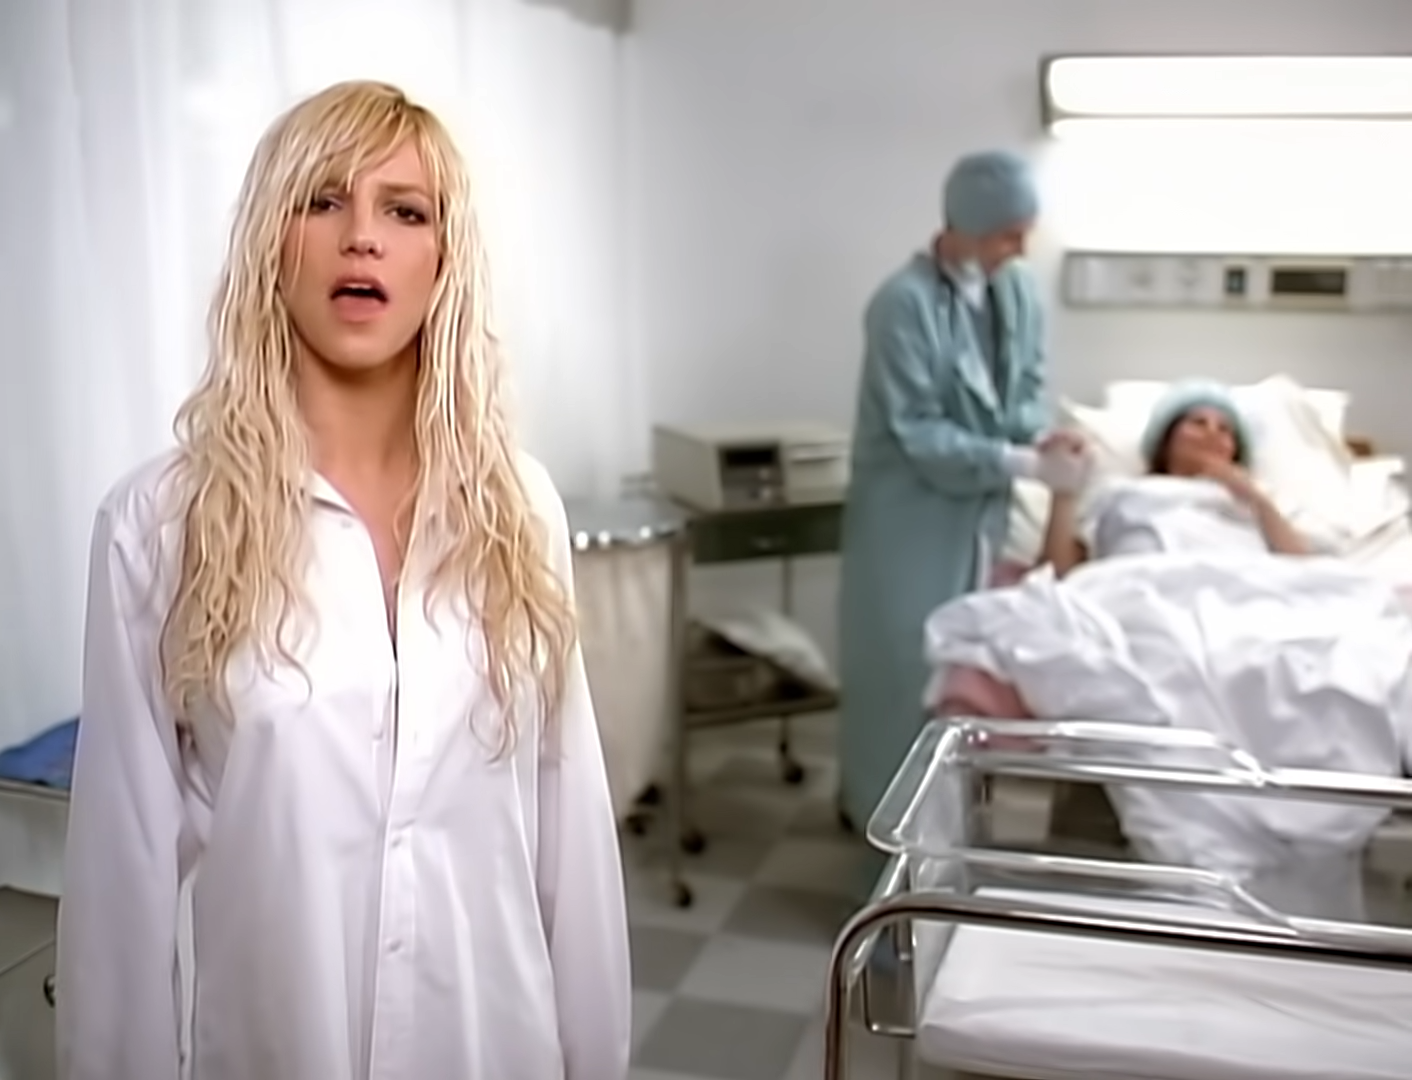 7 Puntos para entender la TEORÍA del aborto de Britney en el video ‘Everytime’